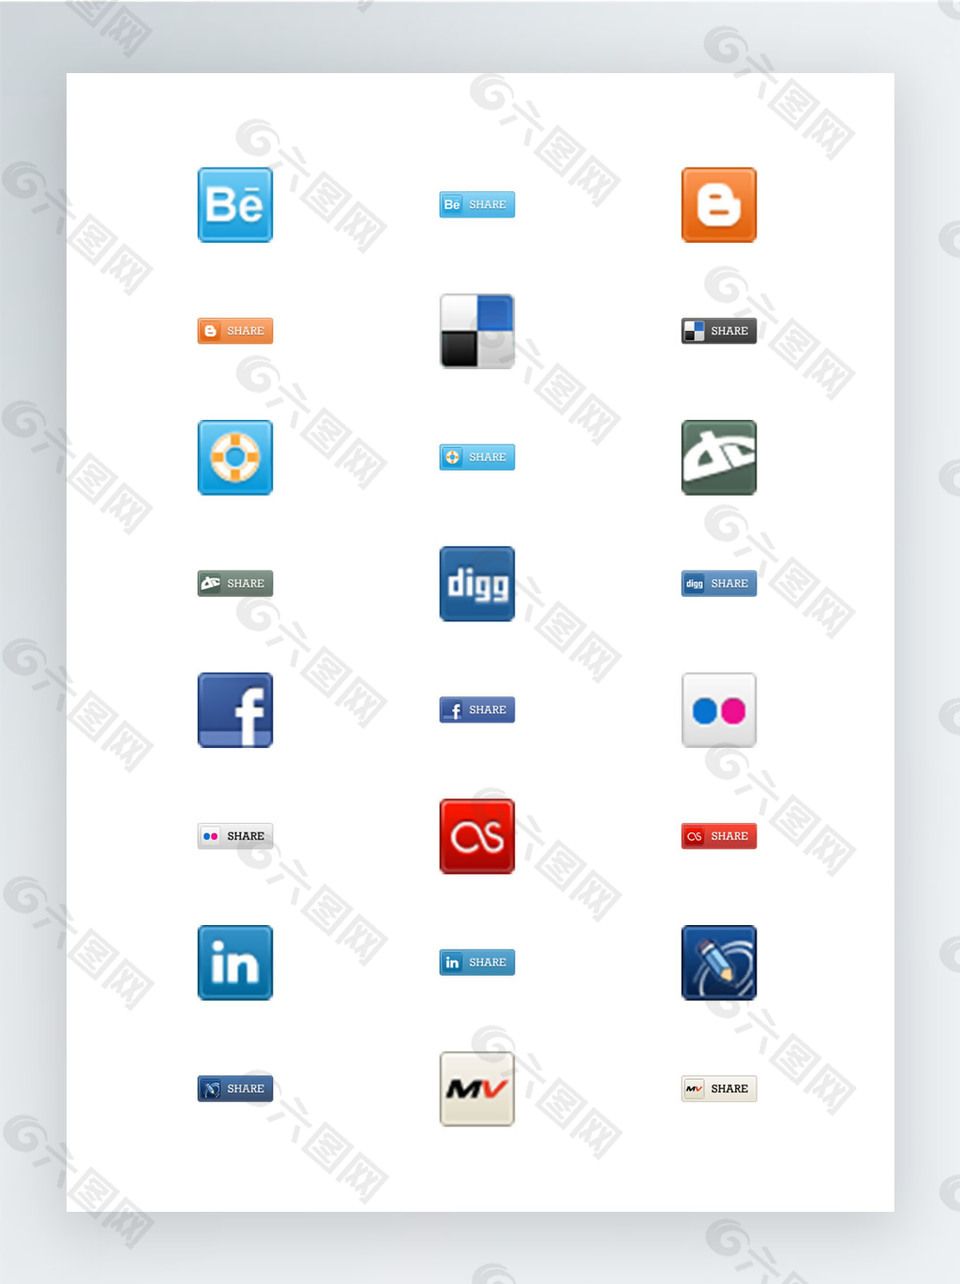 社交软件网站创意图标合集